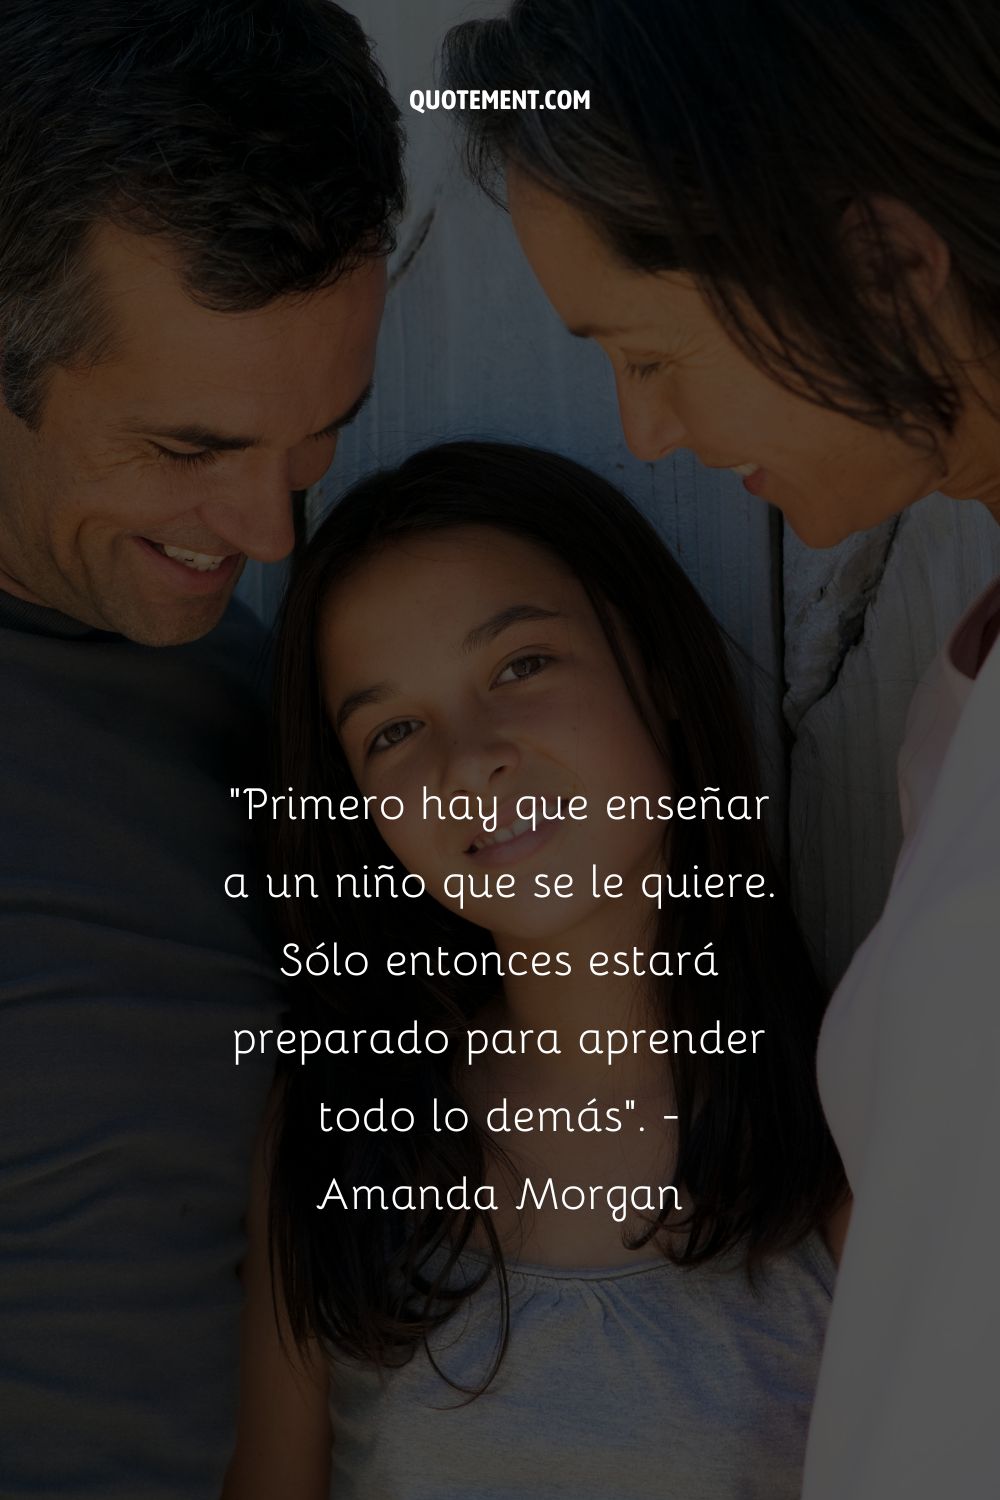 "Primero hay que enseñar a un niño que se le quiere. Sólo entonces estará preparado para aprender todo lo demás". - Amanda Morgan